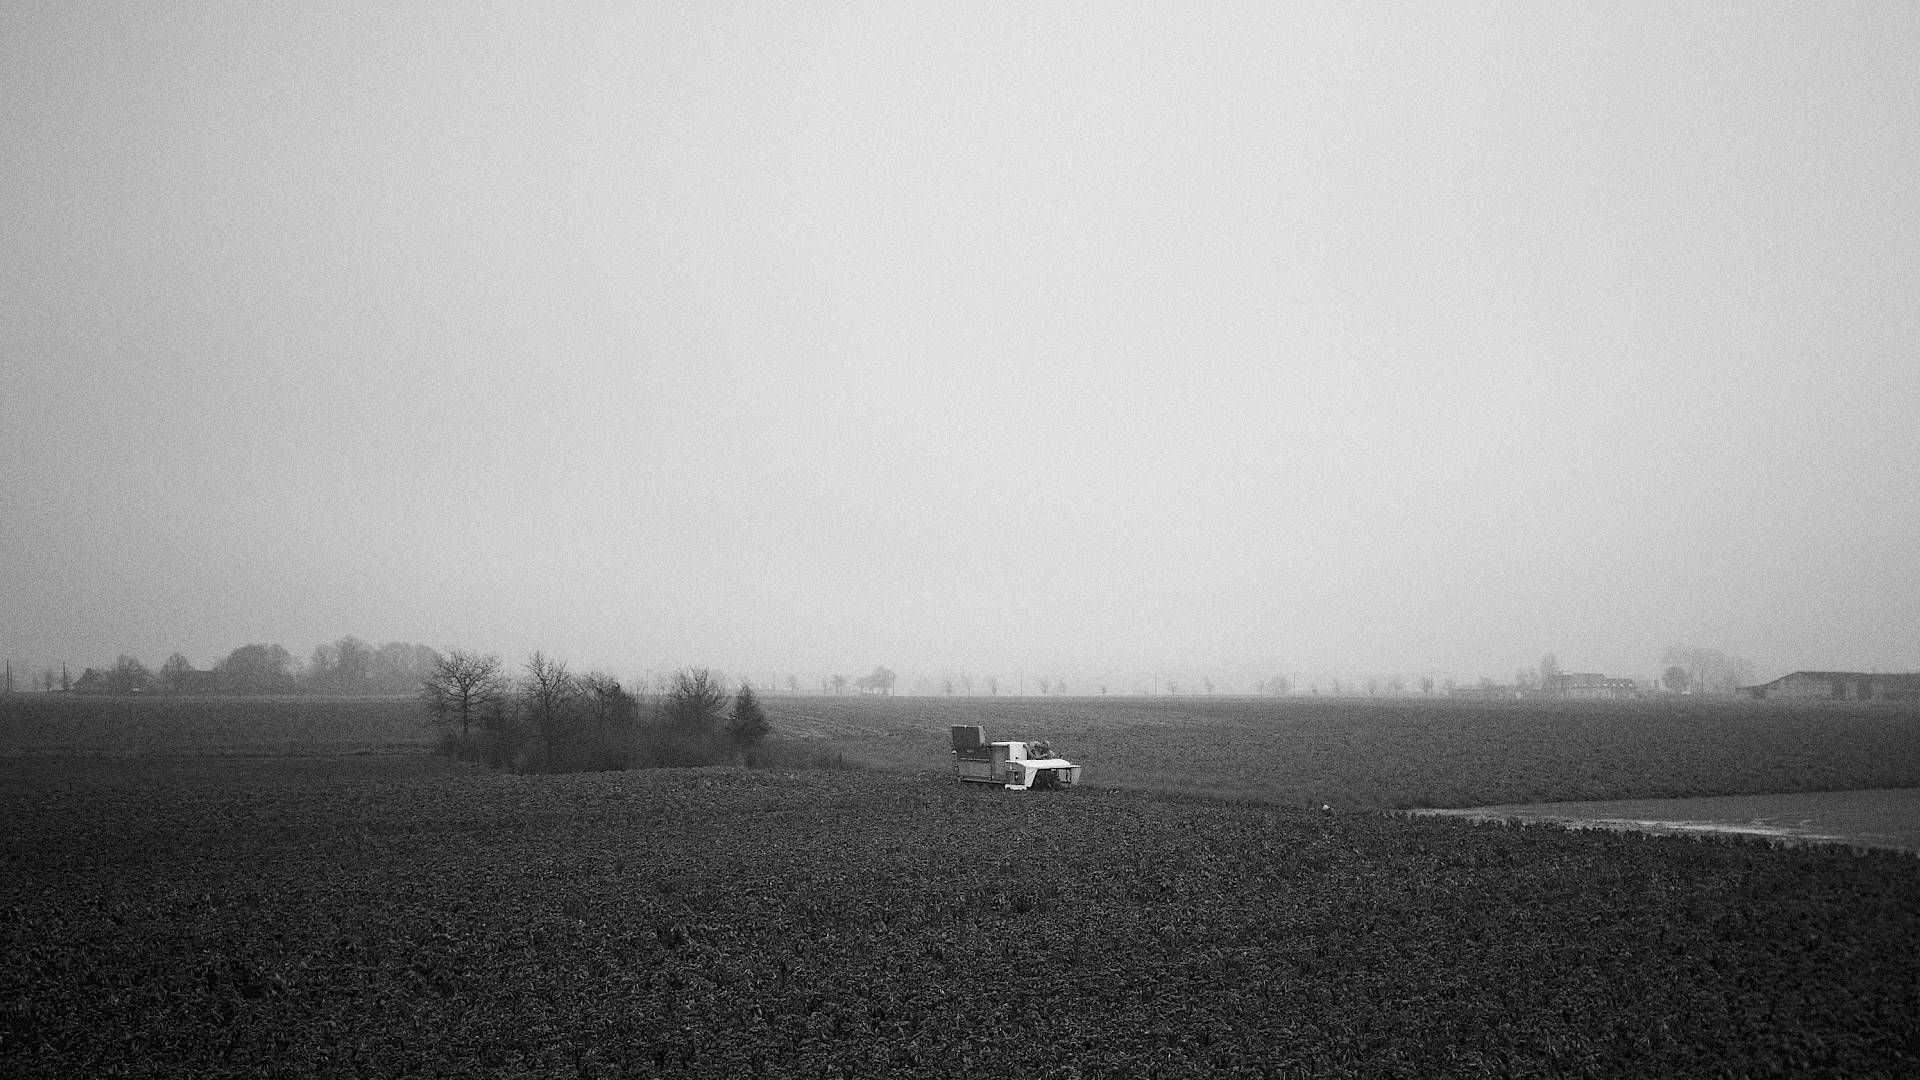 Image en noir et blanc d'une machine agricole dans la campagne, avec des fermes en arrière-plan